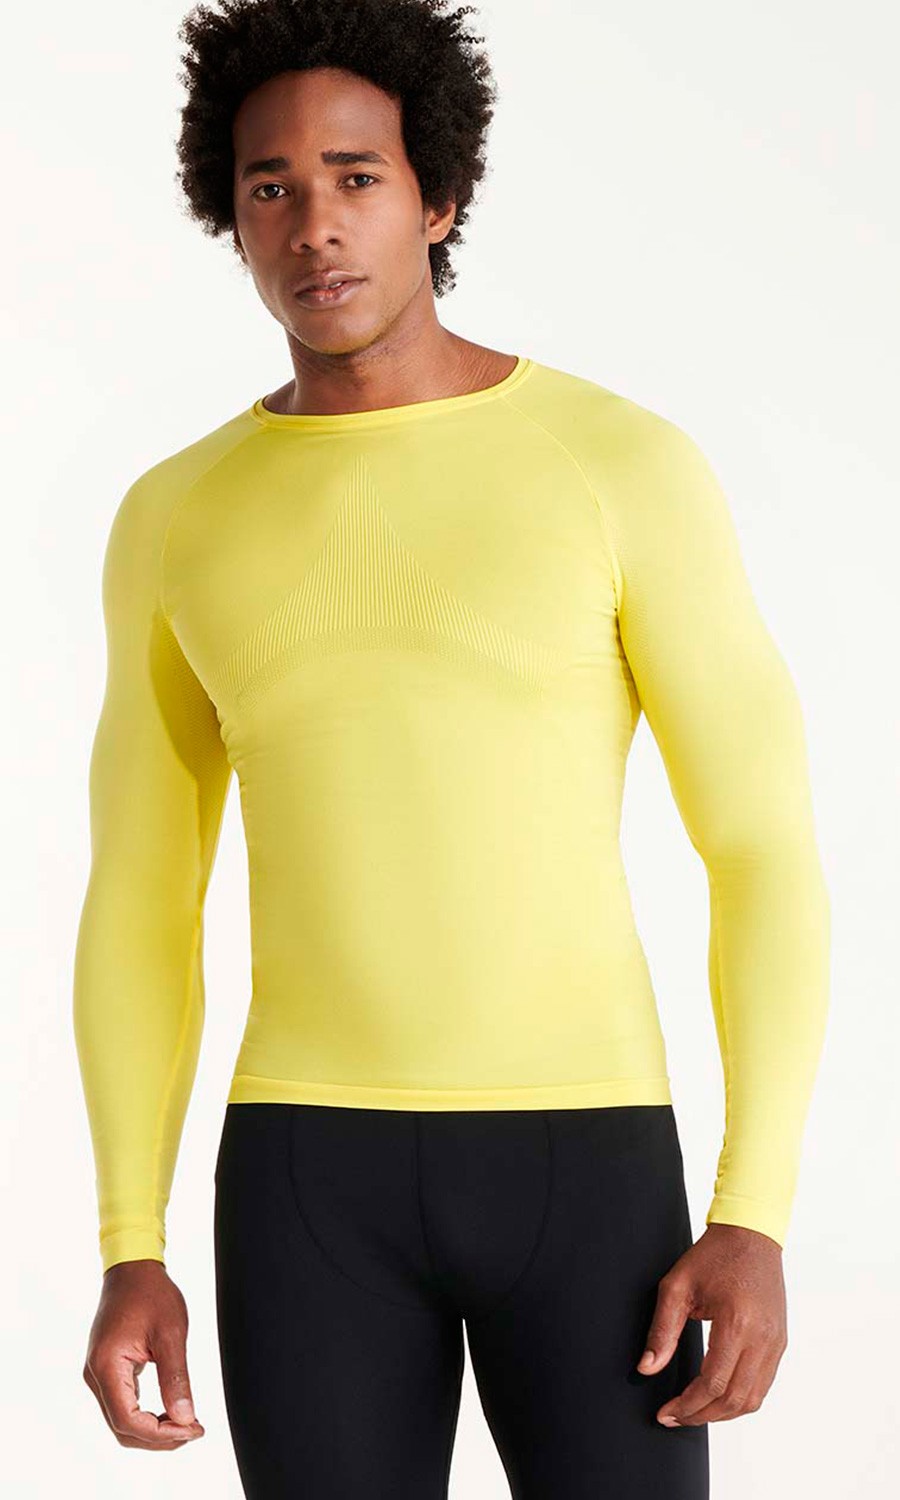 Camiseta térmica unisex, tejido reforzado. 92% Poliamida - 8% Elastano, 200  g/m². - euroUniforms